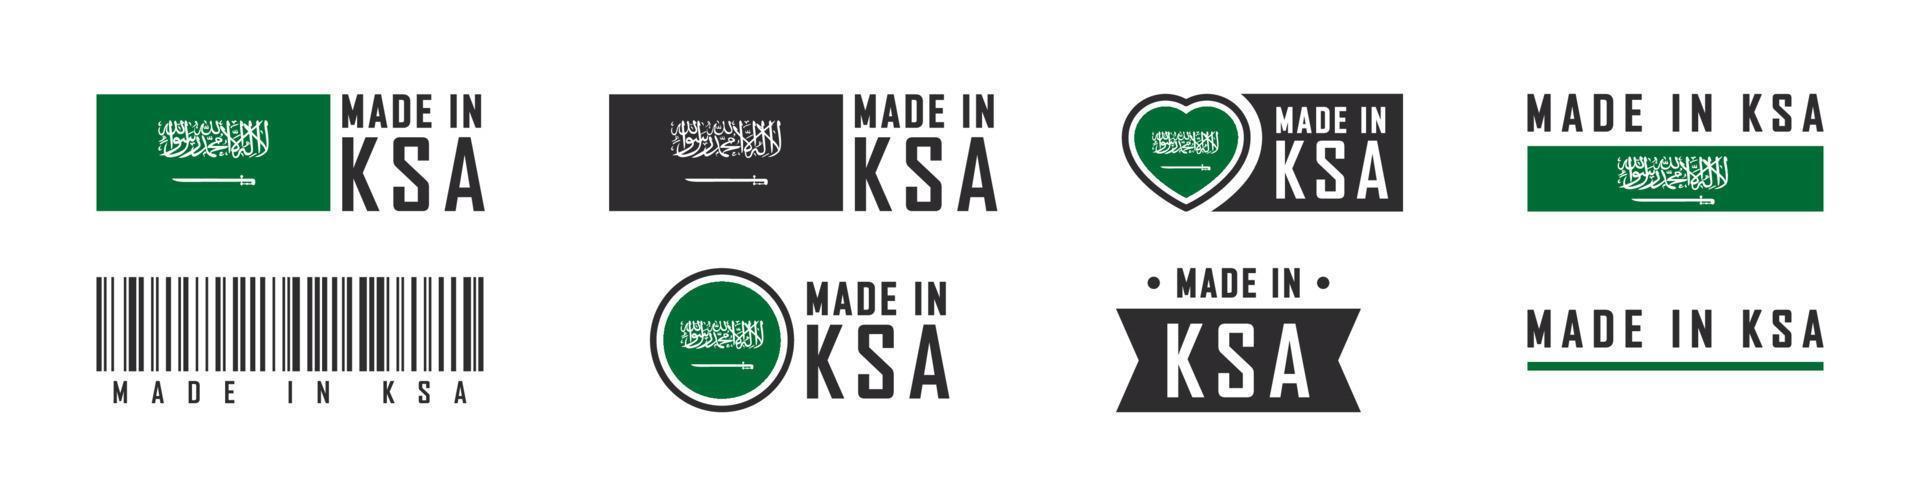 feito no logotipo ou rótulos da arábia saudita. emblemas de produtos da arábia saudita. ilustração vetorial vetor